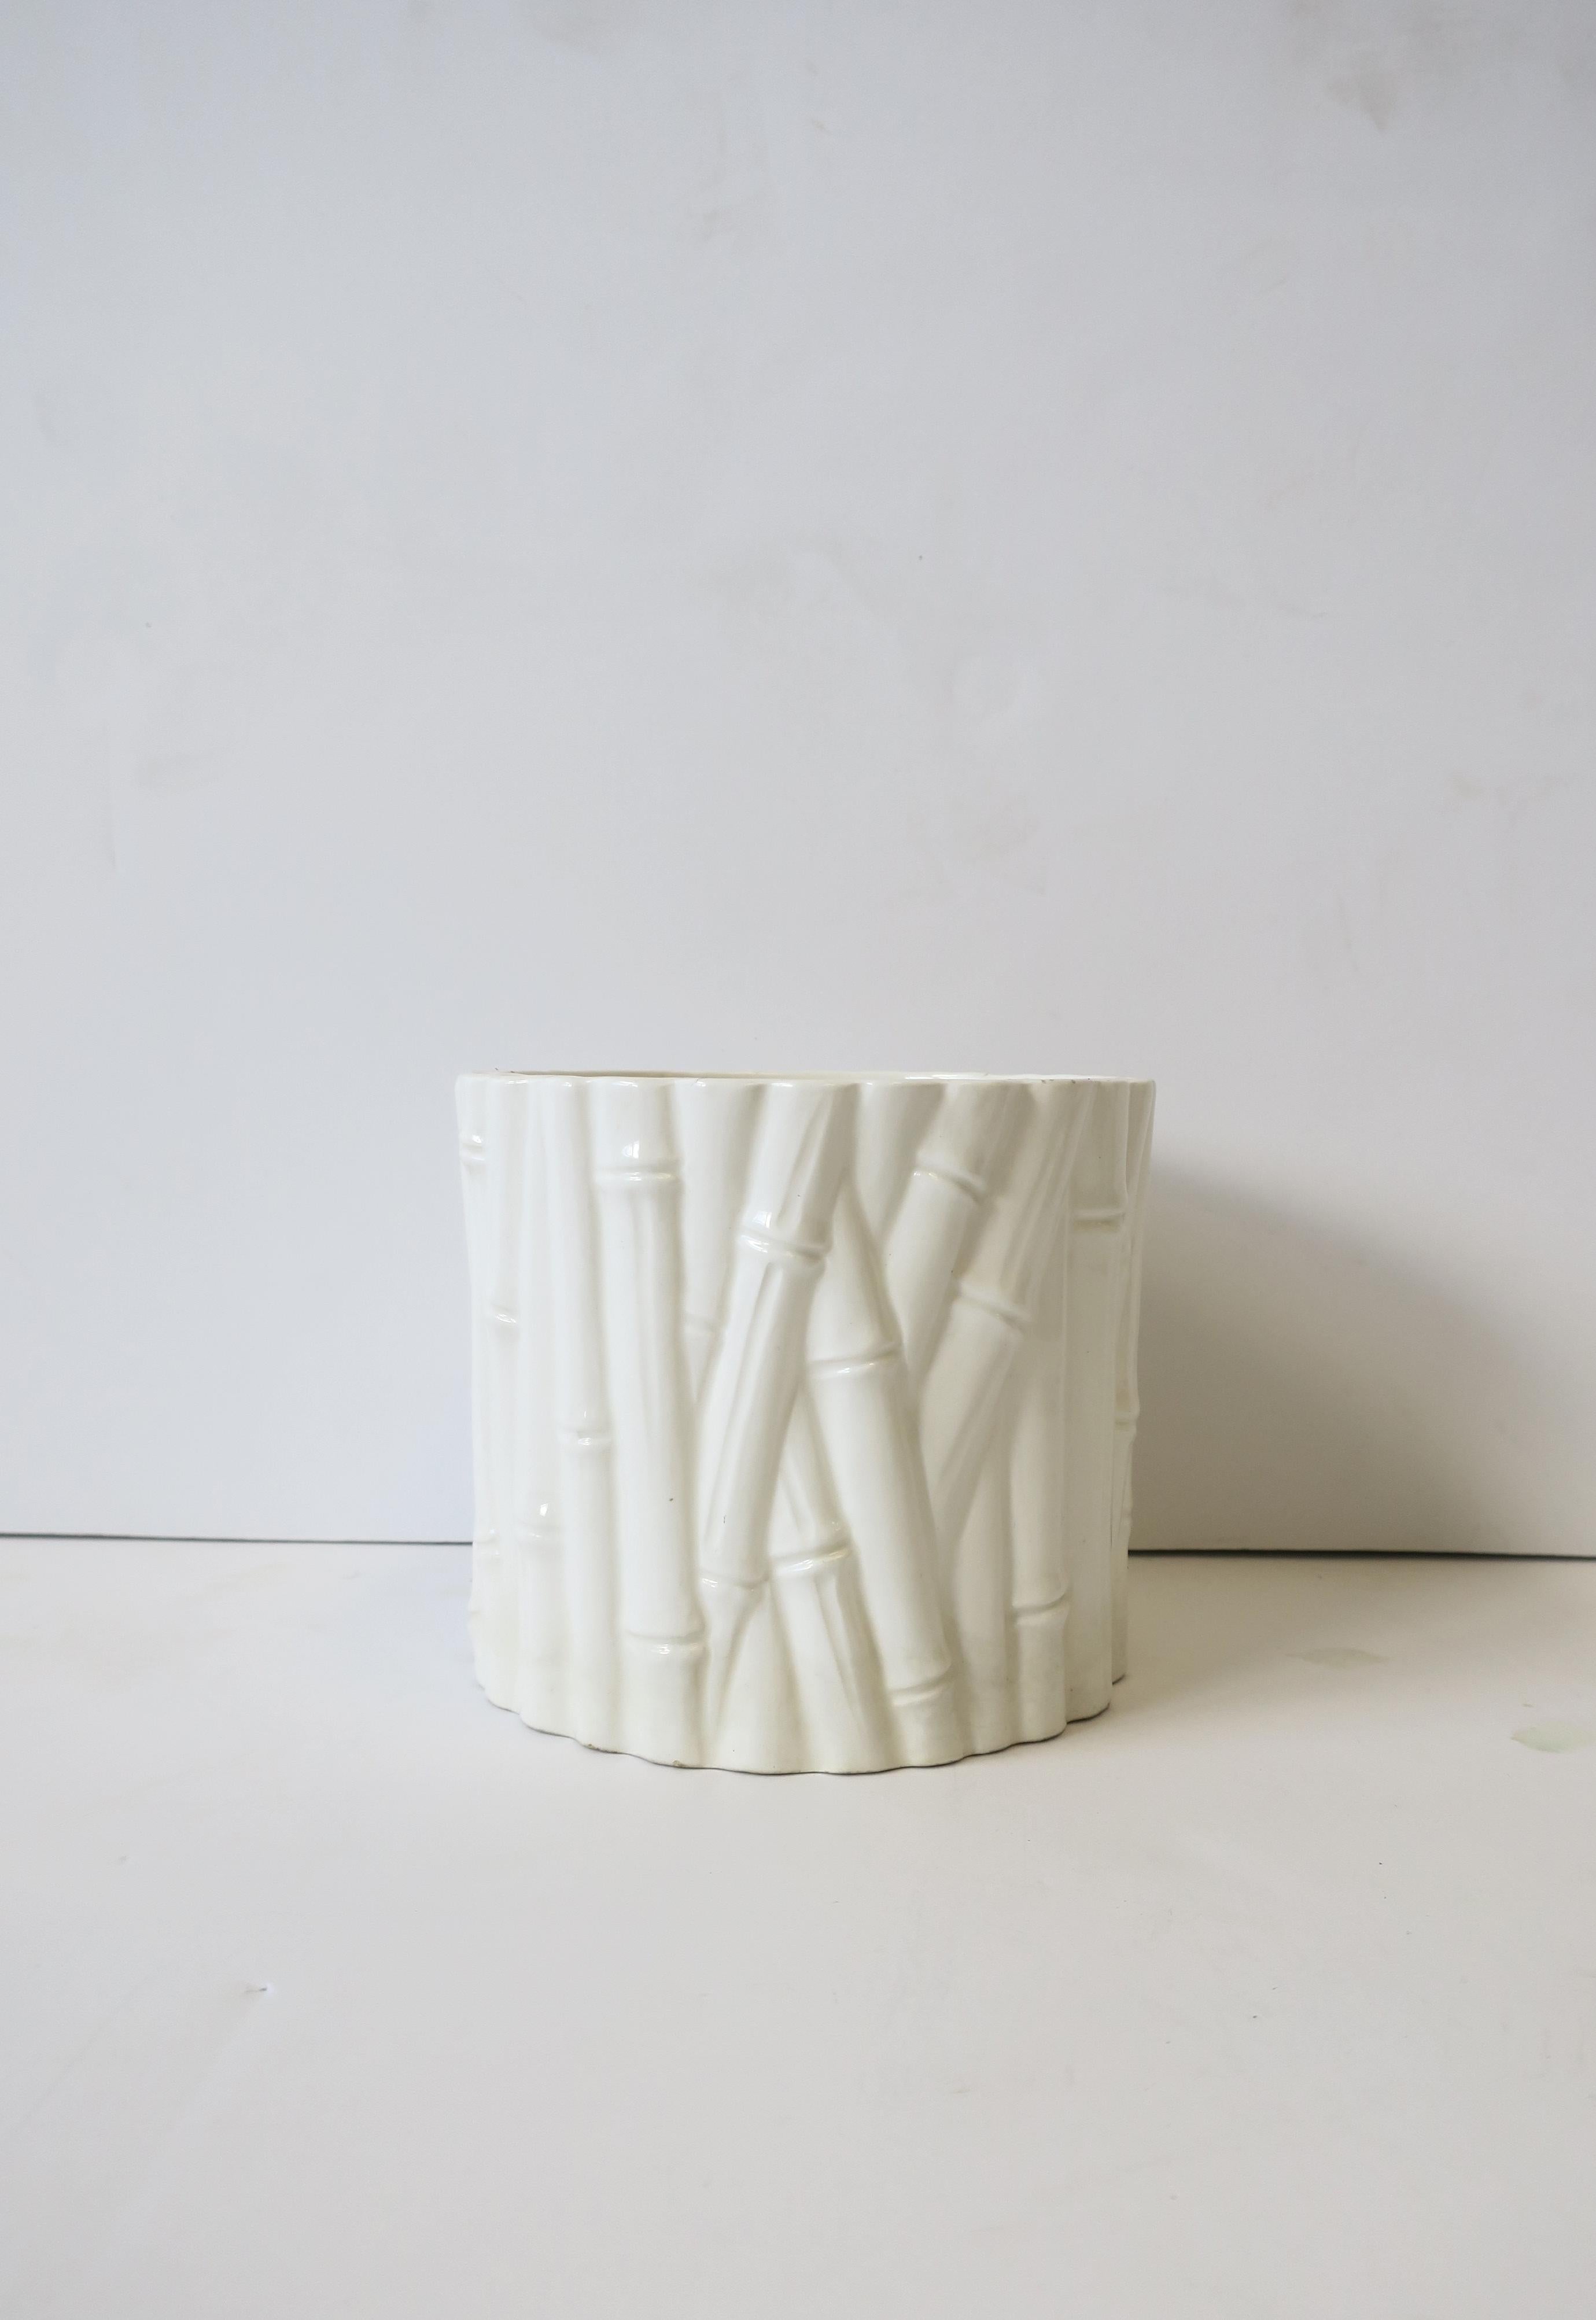 Cache-pot ou jardinière ronde en céramique blanche à motif de bambou, vers la fin du XXe siècle, années 1970. Représenté avec une petite plante à fleurs dans les mains. Dimensions : 4,88